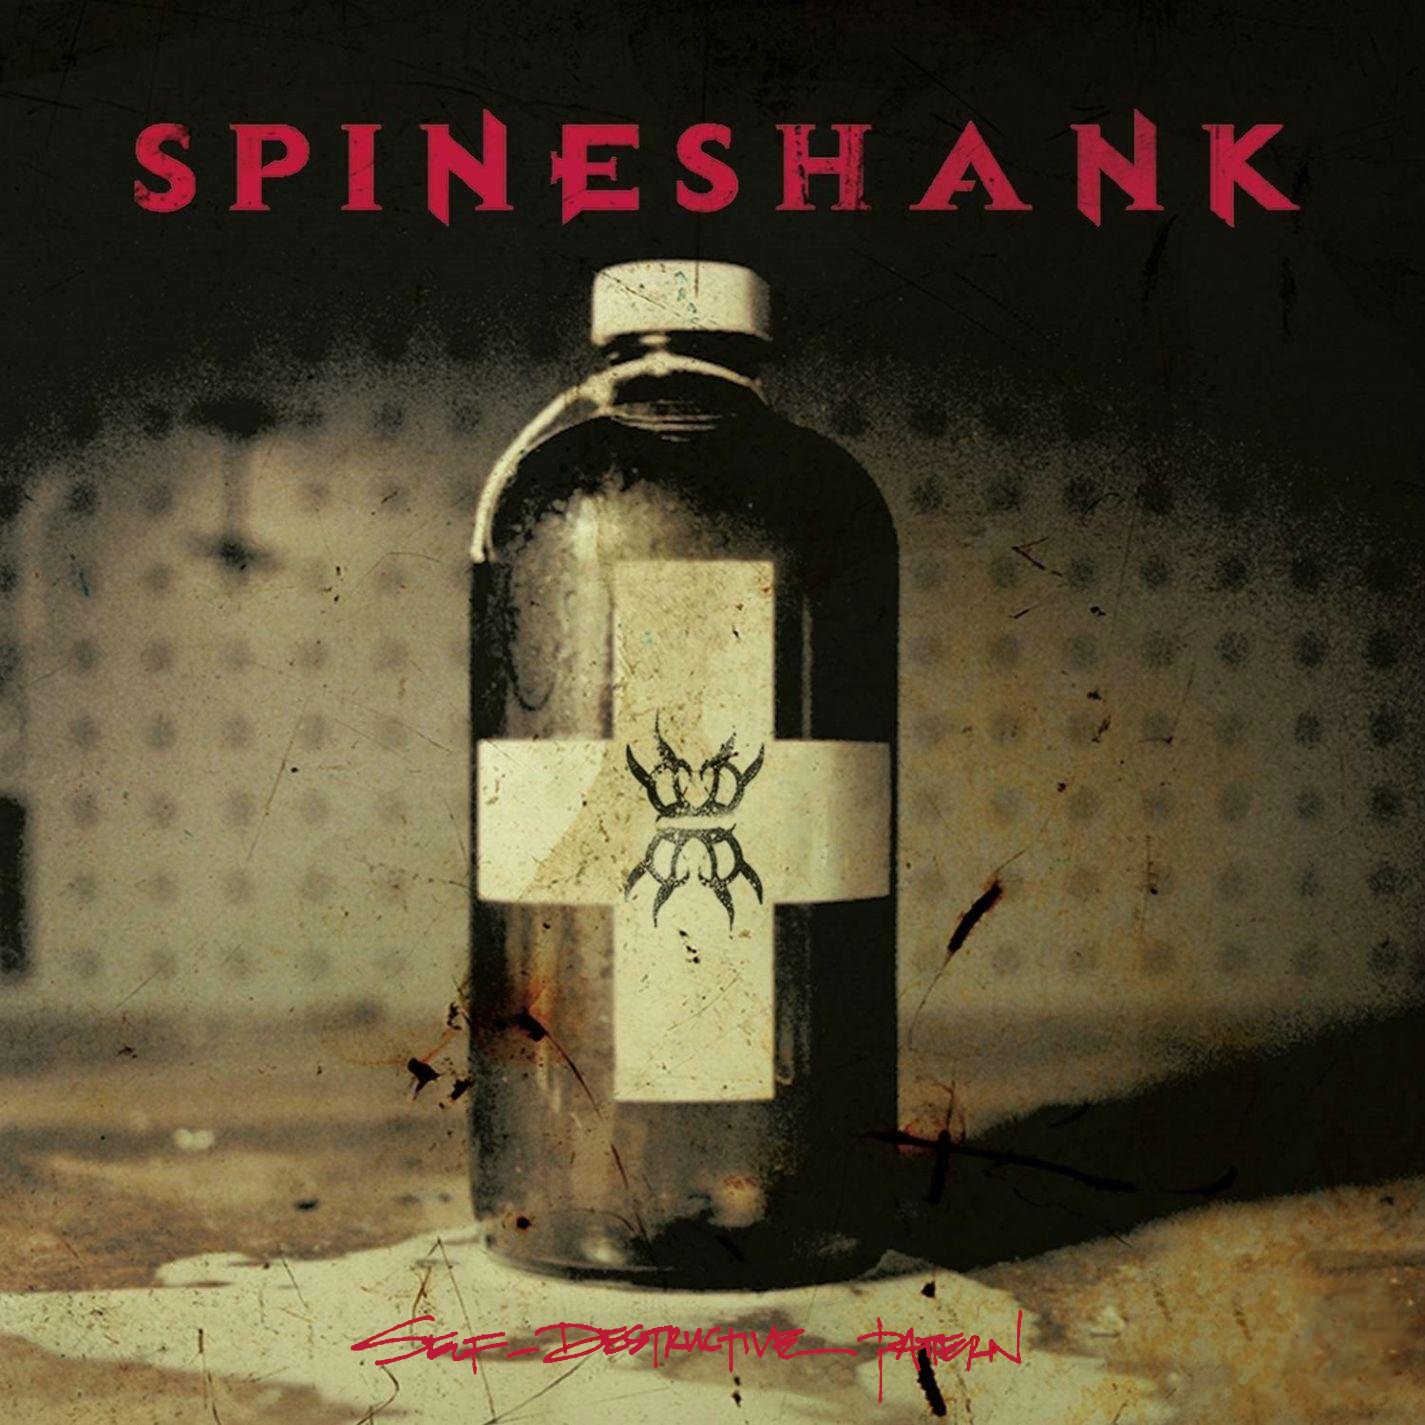 Spineshank - Self Destructive Pattern (2003) Cover